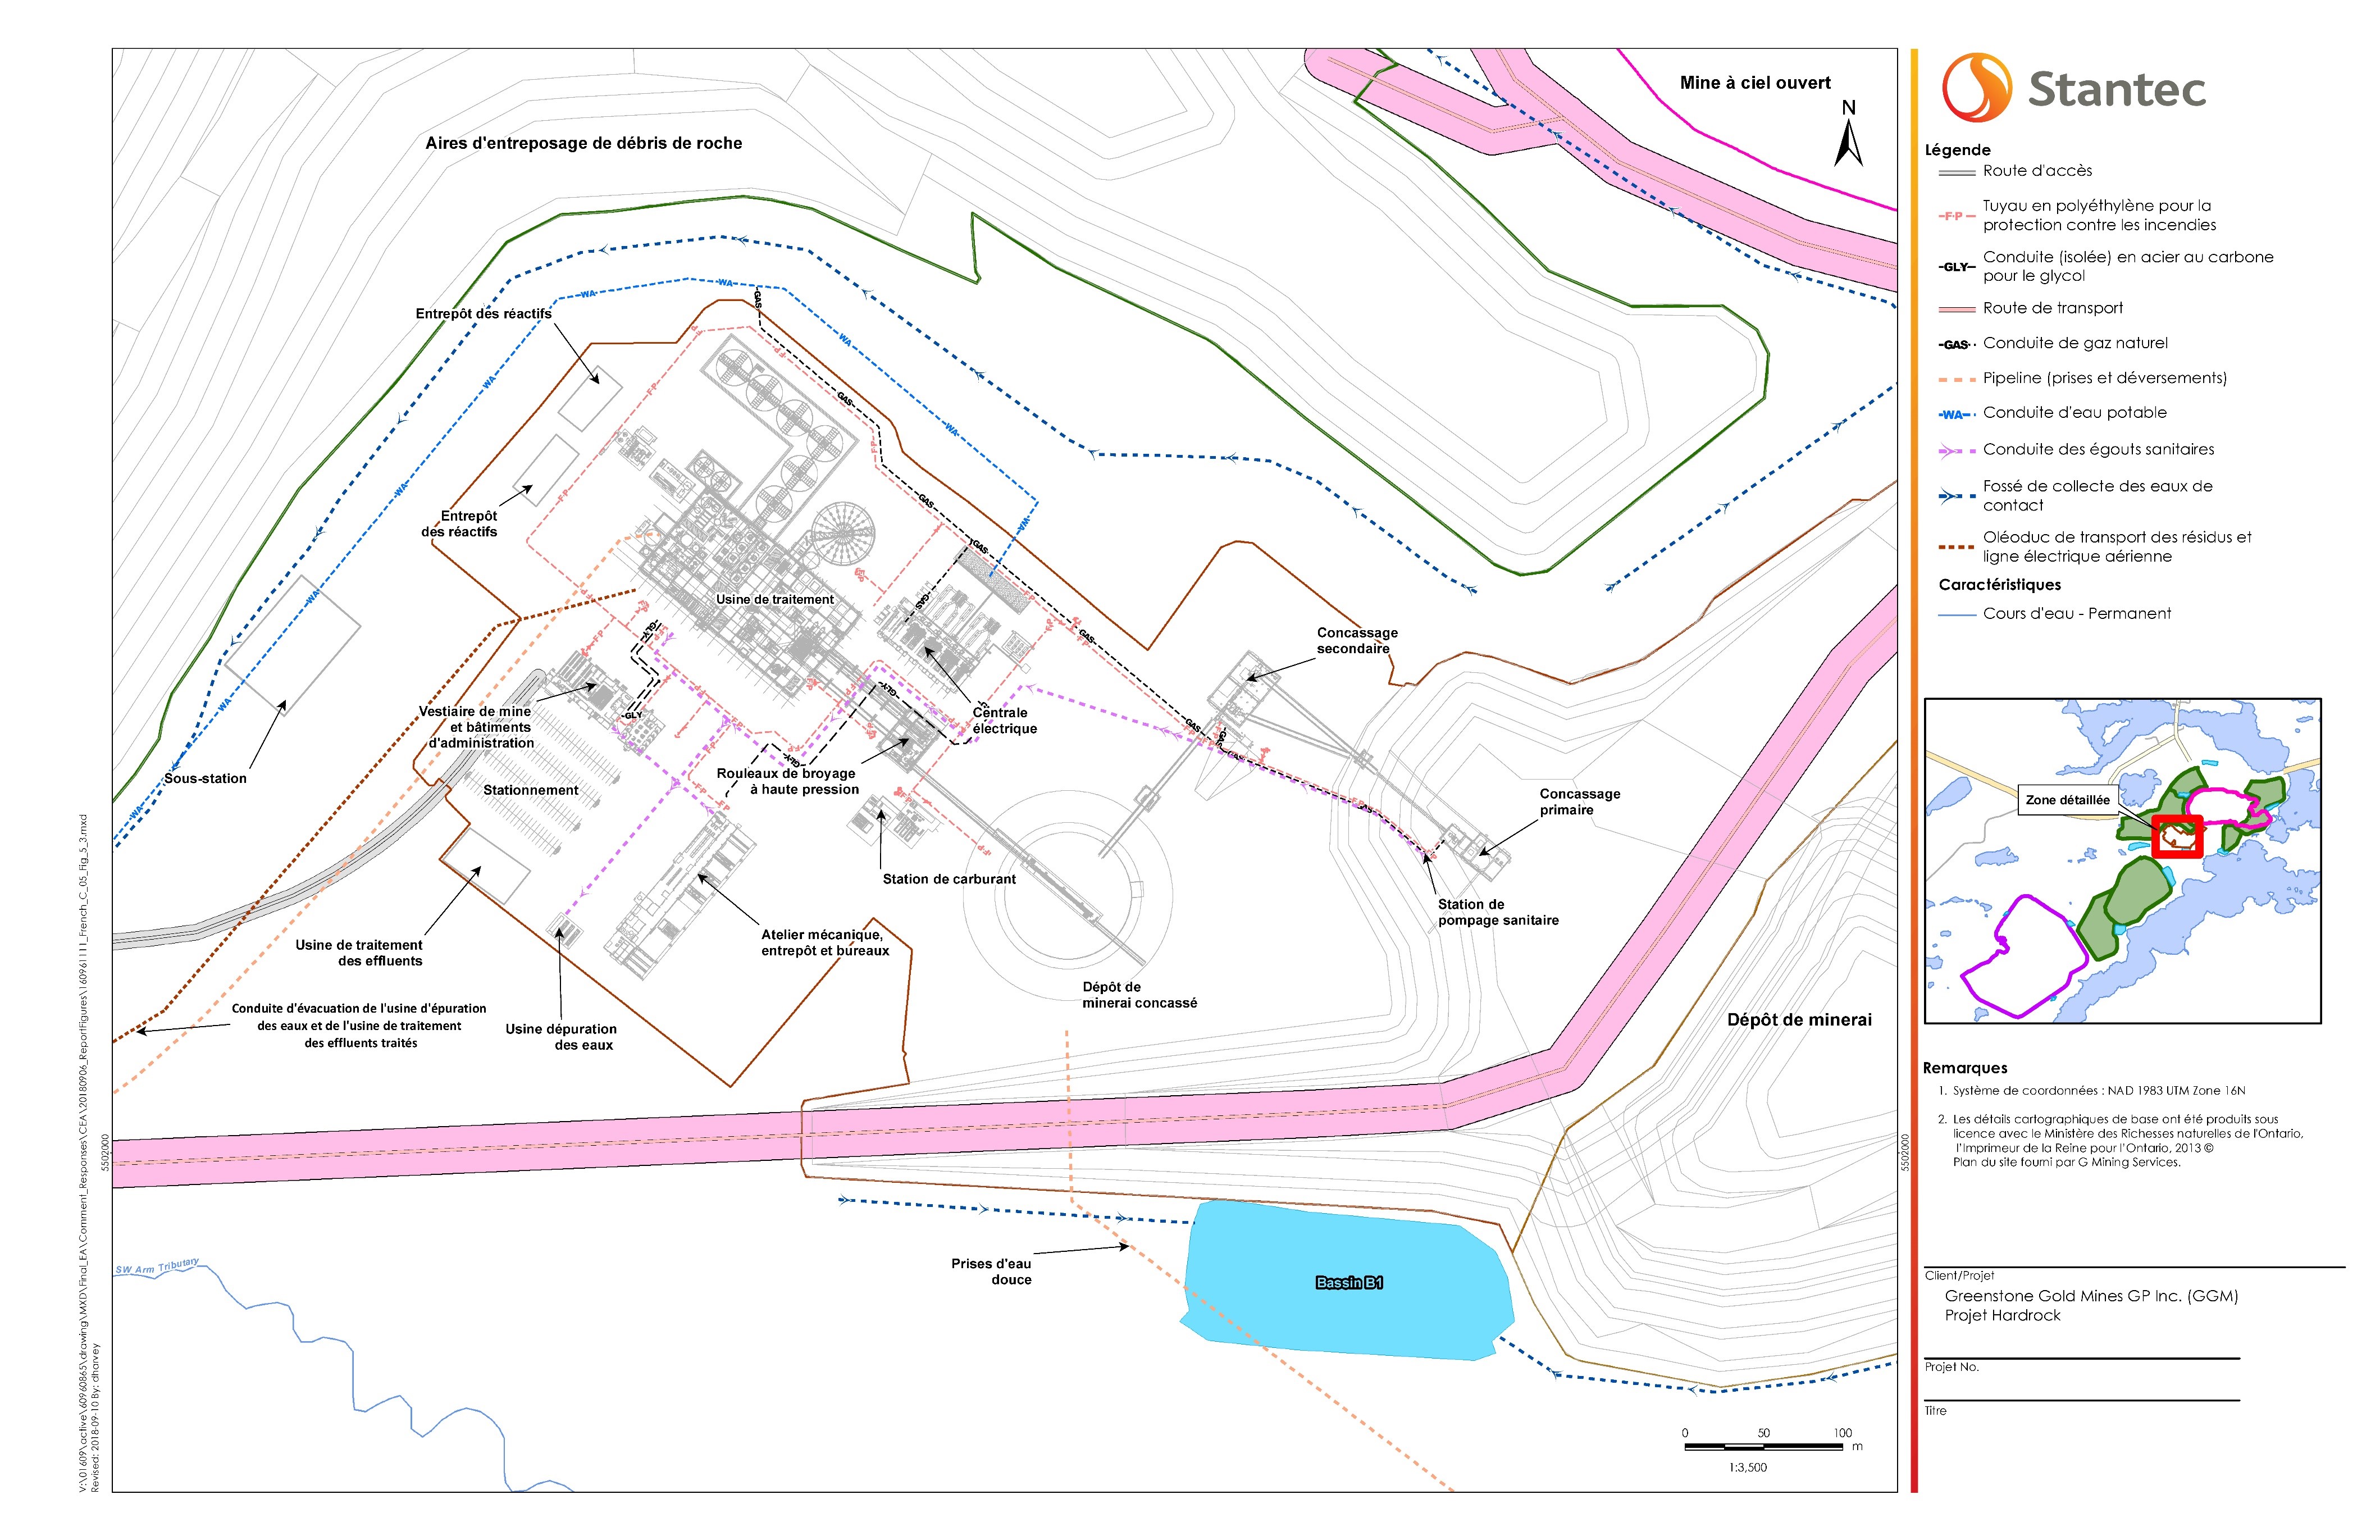 Figure 10 - Plan du site - Détails de la zone de l'usine de traitement